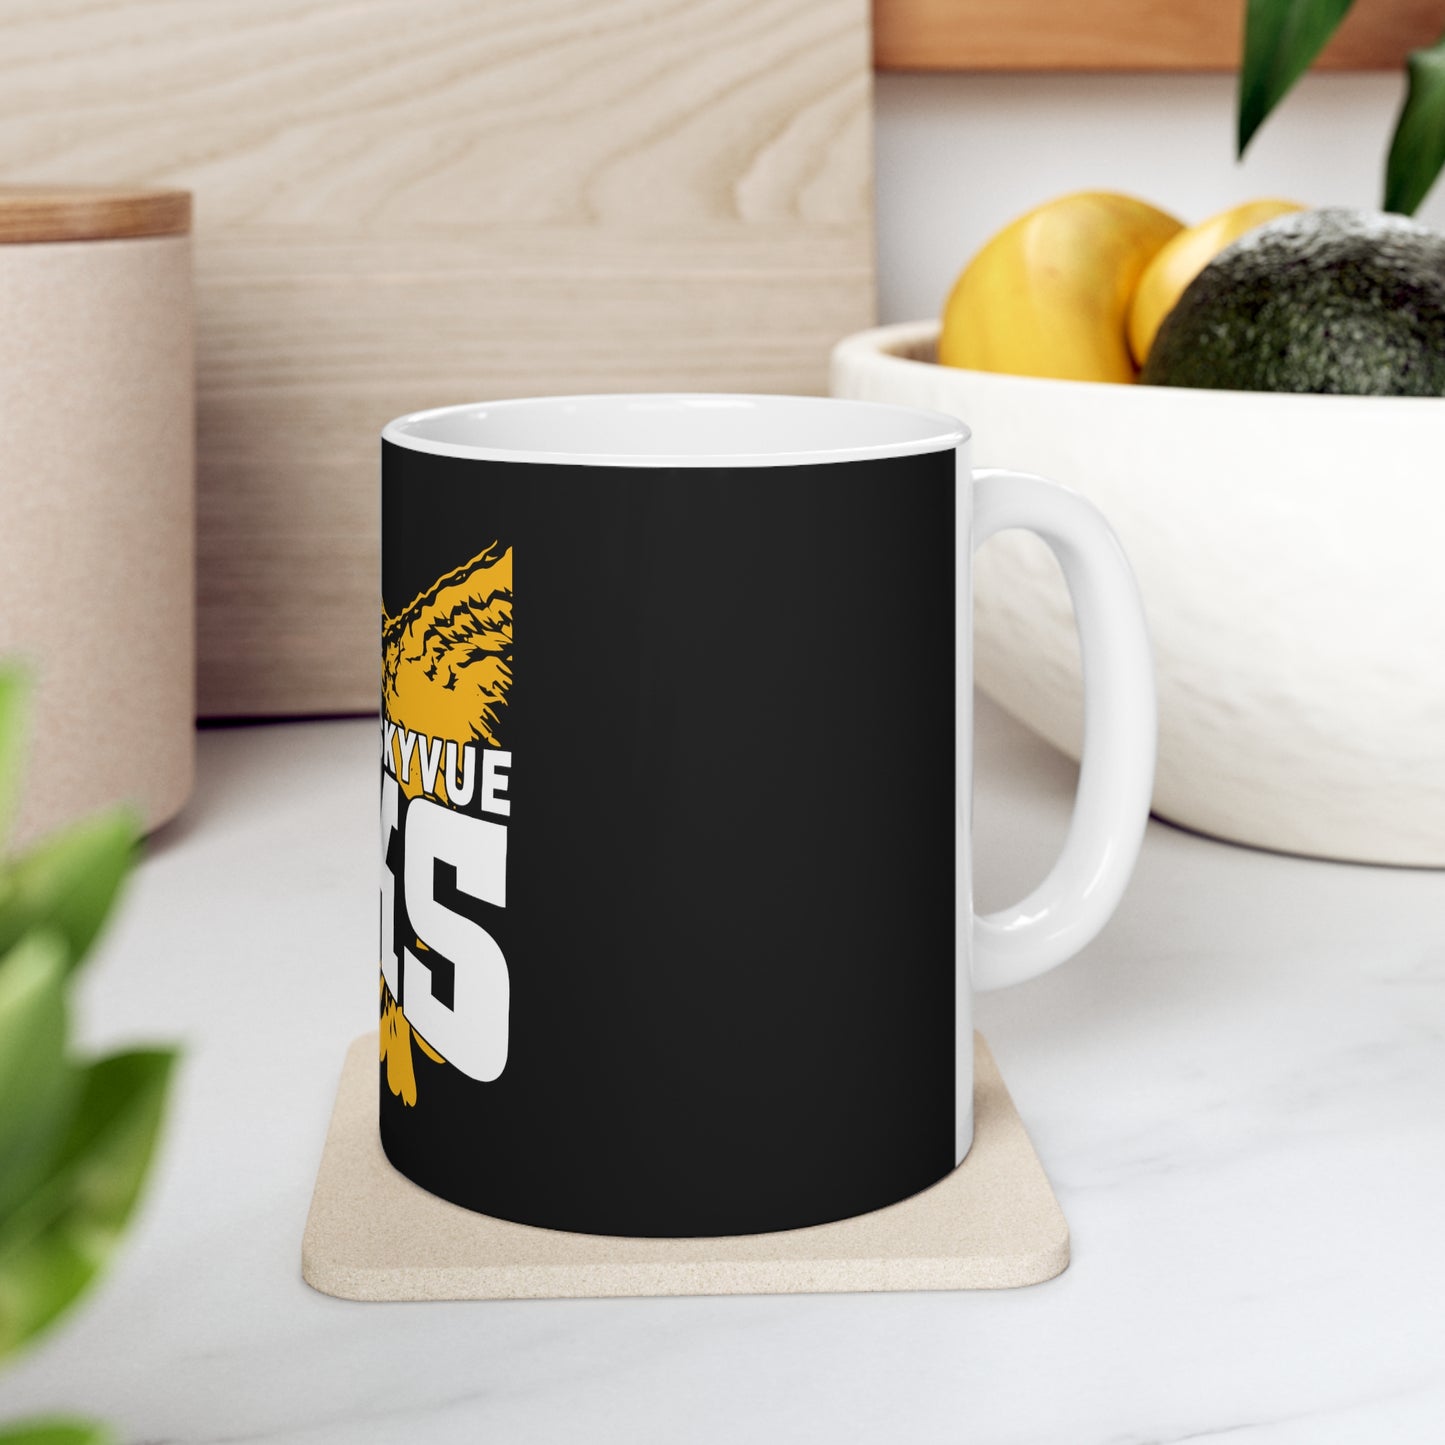 Ceramic Mug 11oz - Skyvue